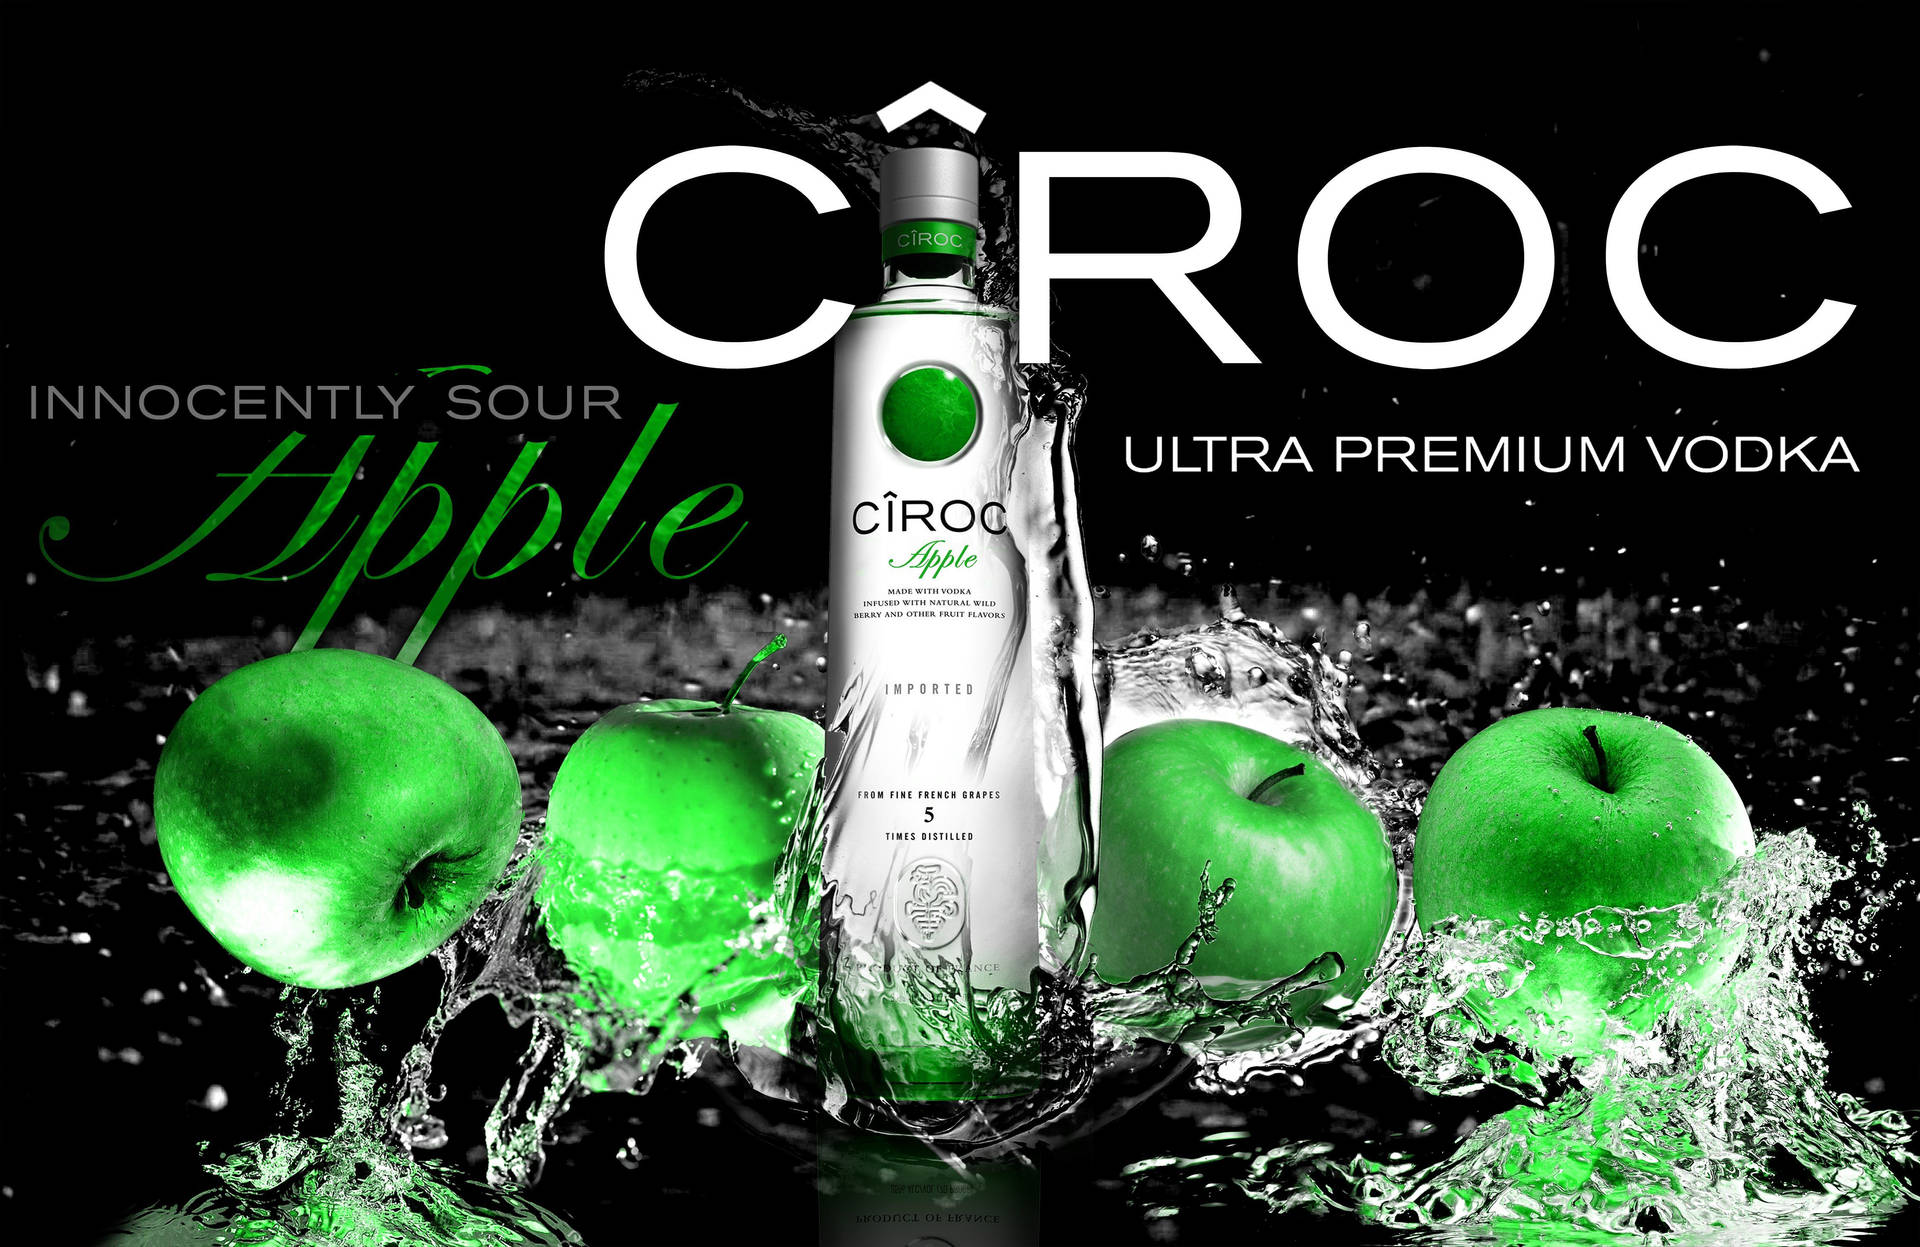 Ciroc Ultra Premium Fransk Vodka Æble Smag. Wallpaper